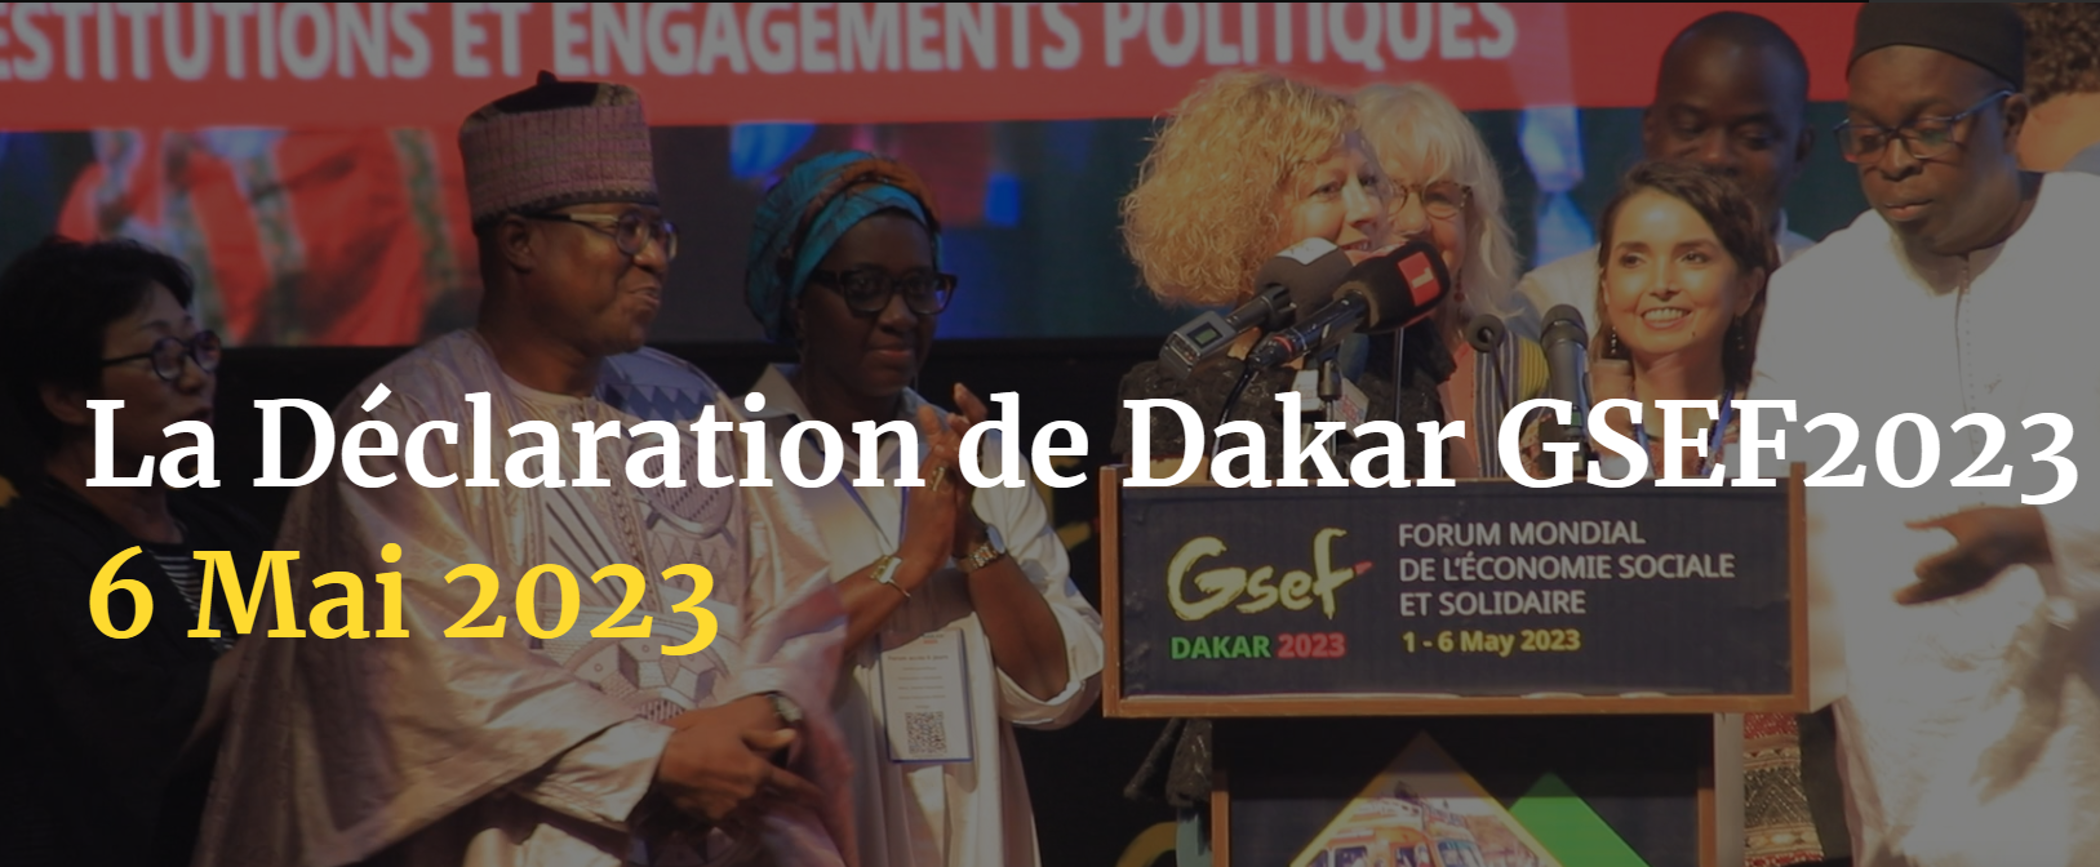 GSEF 2023 : la déclaration de Dakar du 6 mai